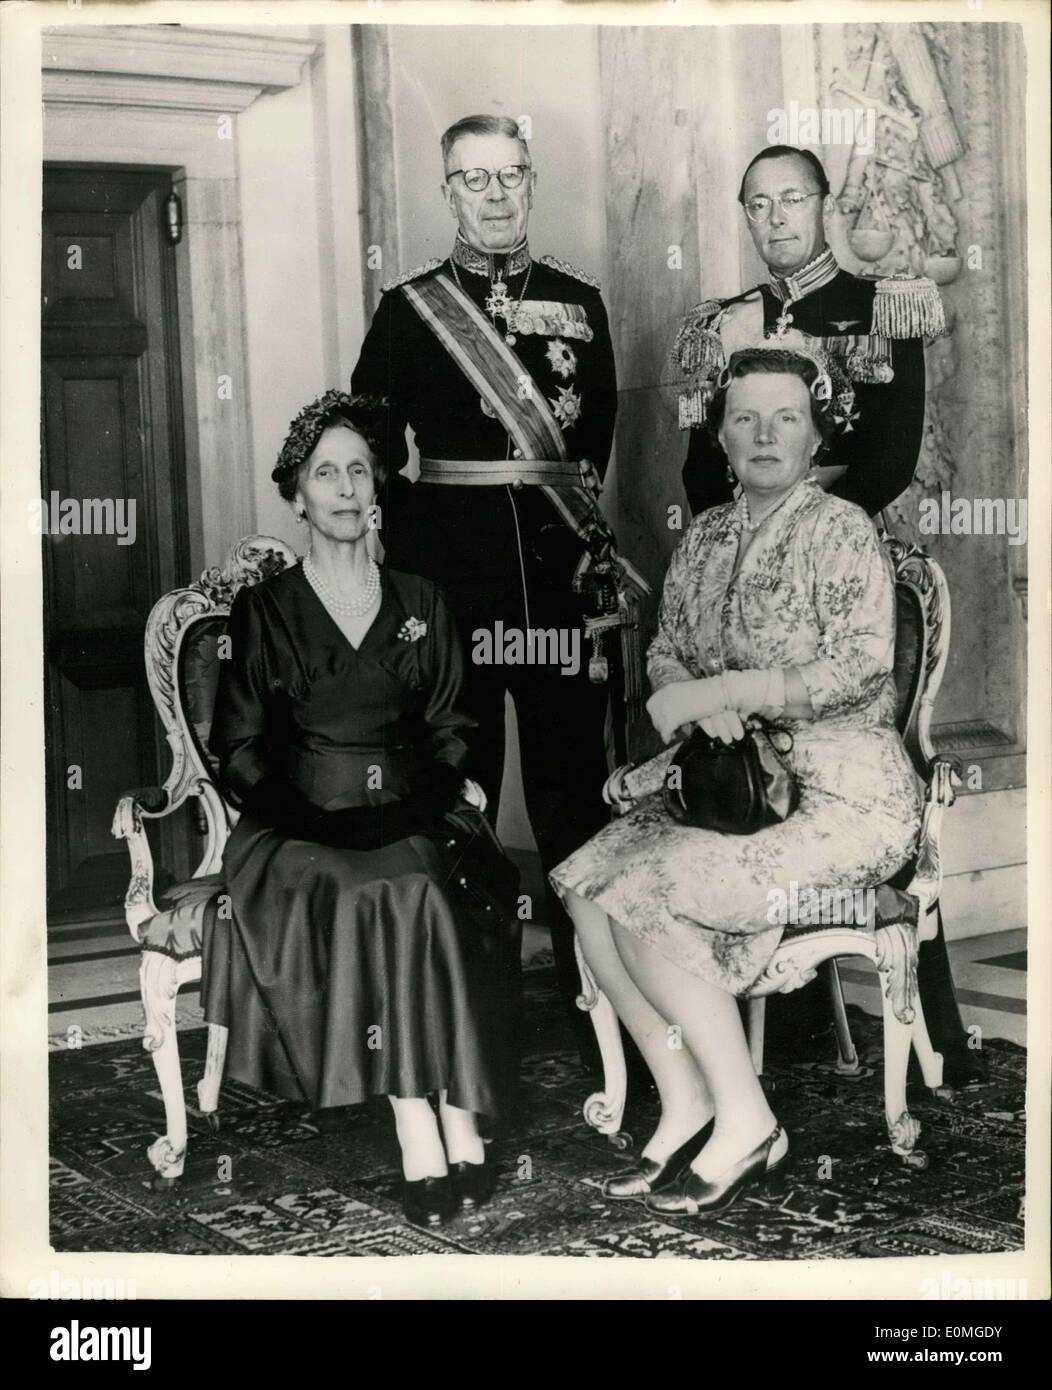 28. April 1955 - König und Königin von Schweden kommen in Holland.: der schwedische König Gustav Adolf und Königin Louise von Schweden, kamen in Amsterdam Stockfoto